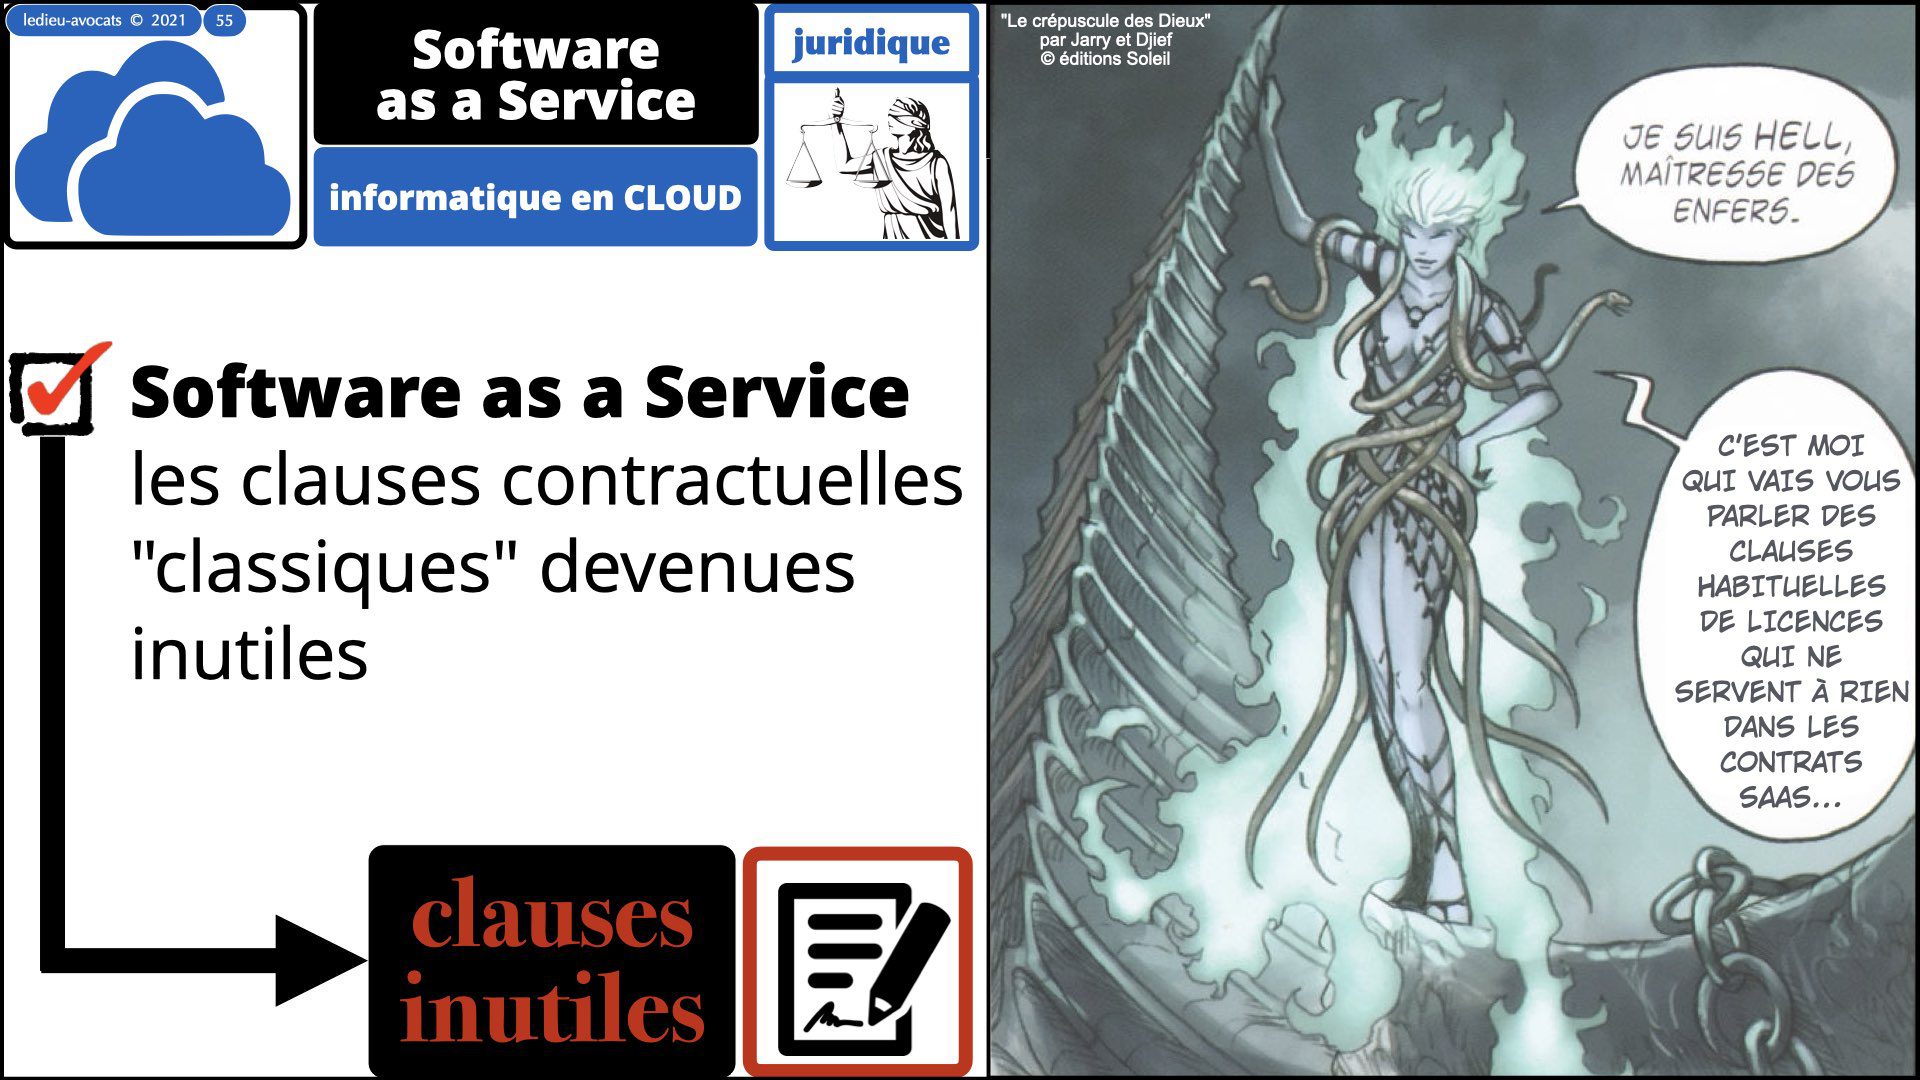 343 service LOGICIEL SaaS Software-as-a-Service cloud computing © Ledieu-Avocats technique droit numerique 30-08-2021.055